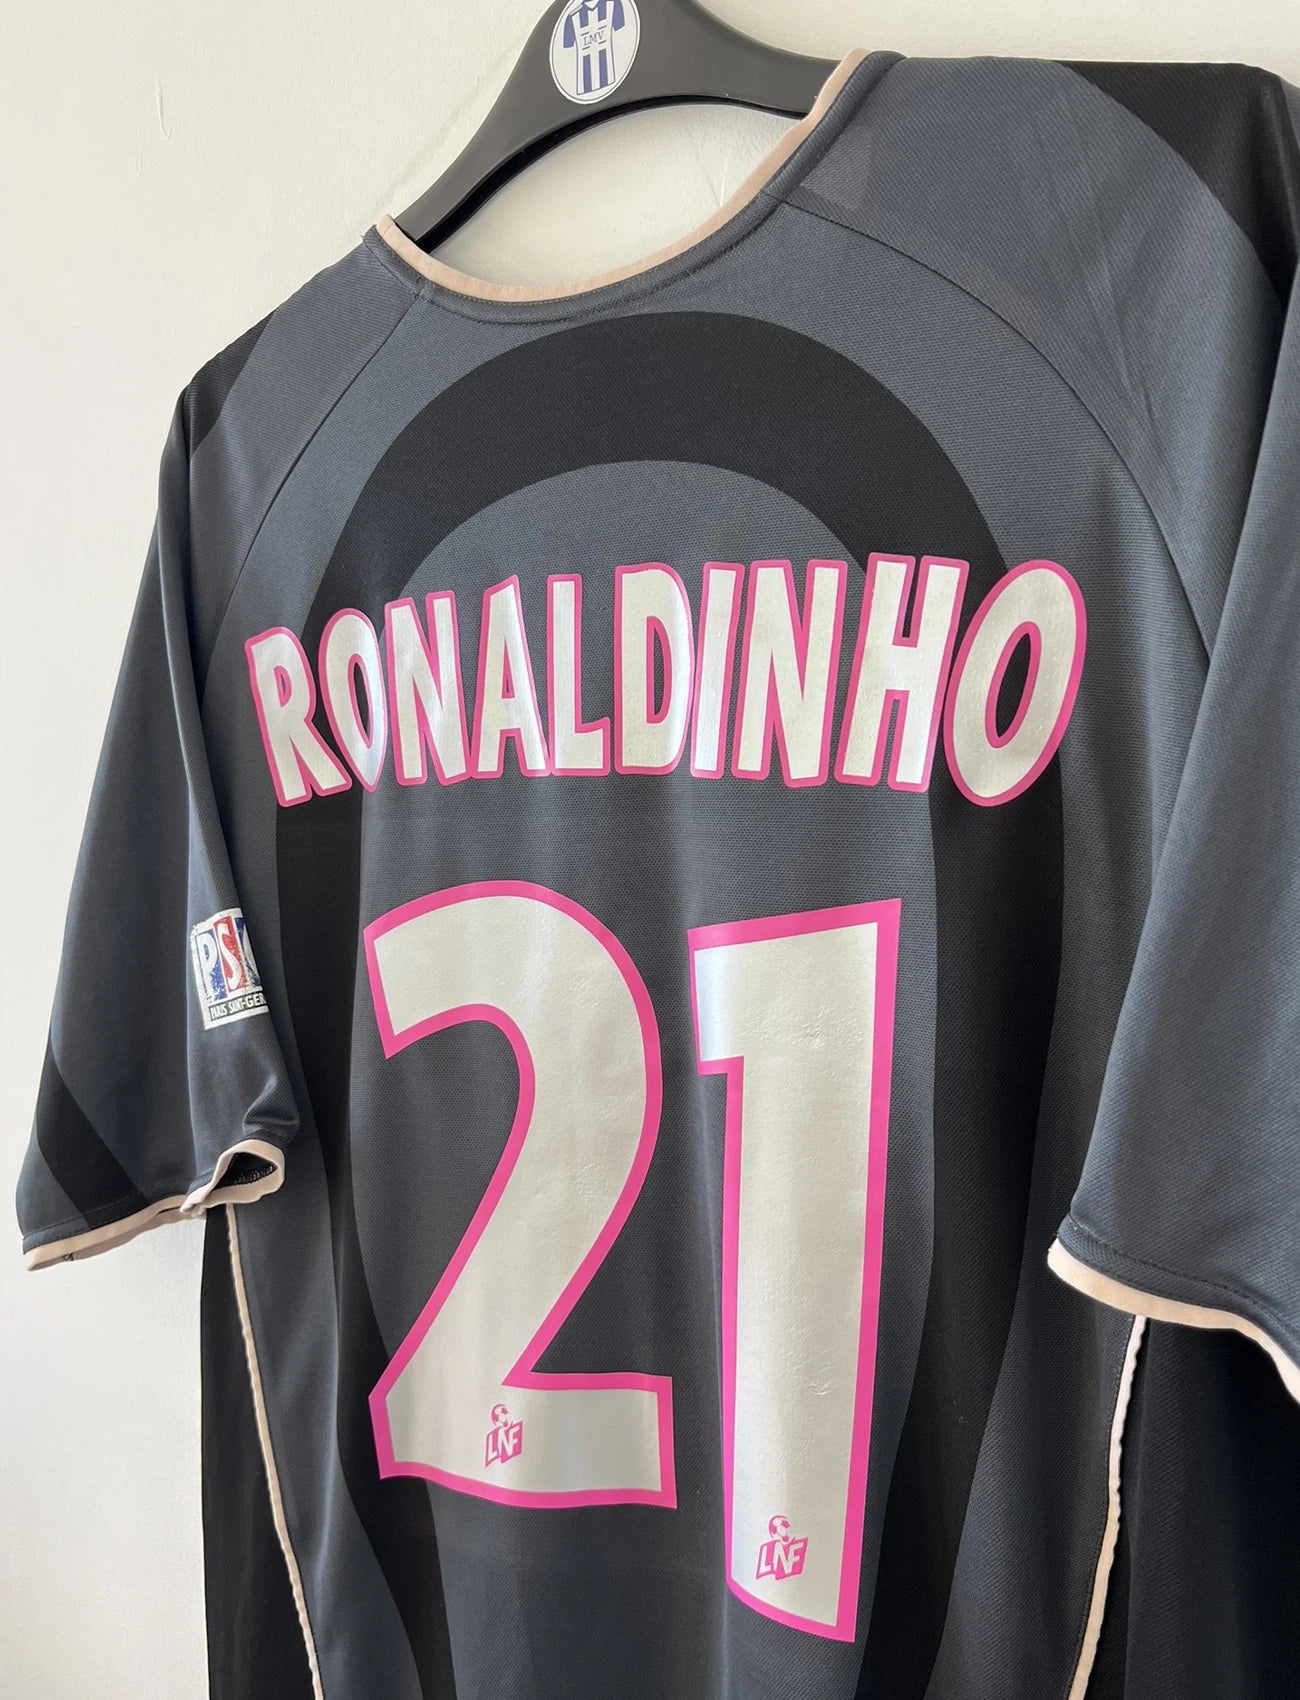 Maillot de foot vintage third du PSG de la saison 2001/2002. Le maillot est de couleur noir et gris. On peut retrouver l'équipementier nike et le sponsor Opel. Le maillot est floqué du numéro 21 Ronaldinho. Le maillot possède l'étiquette avec les numéros F1 ORX. Il s'agit d'un maillot authentique d'époque.